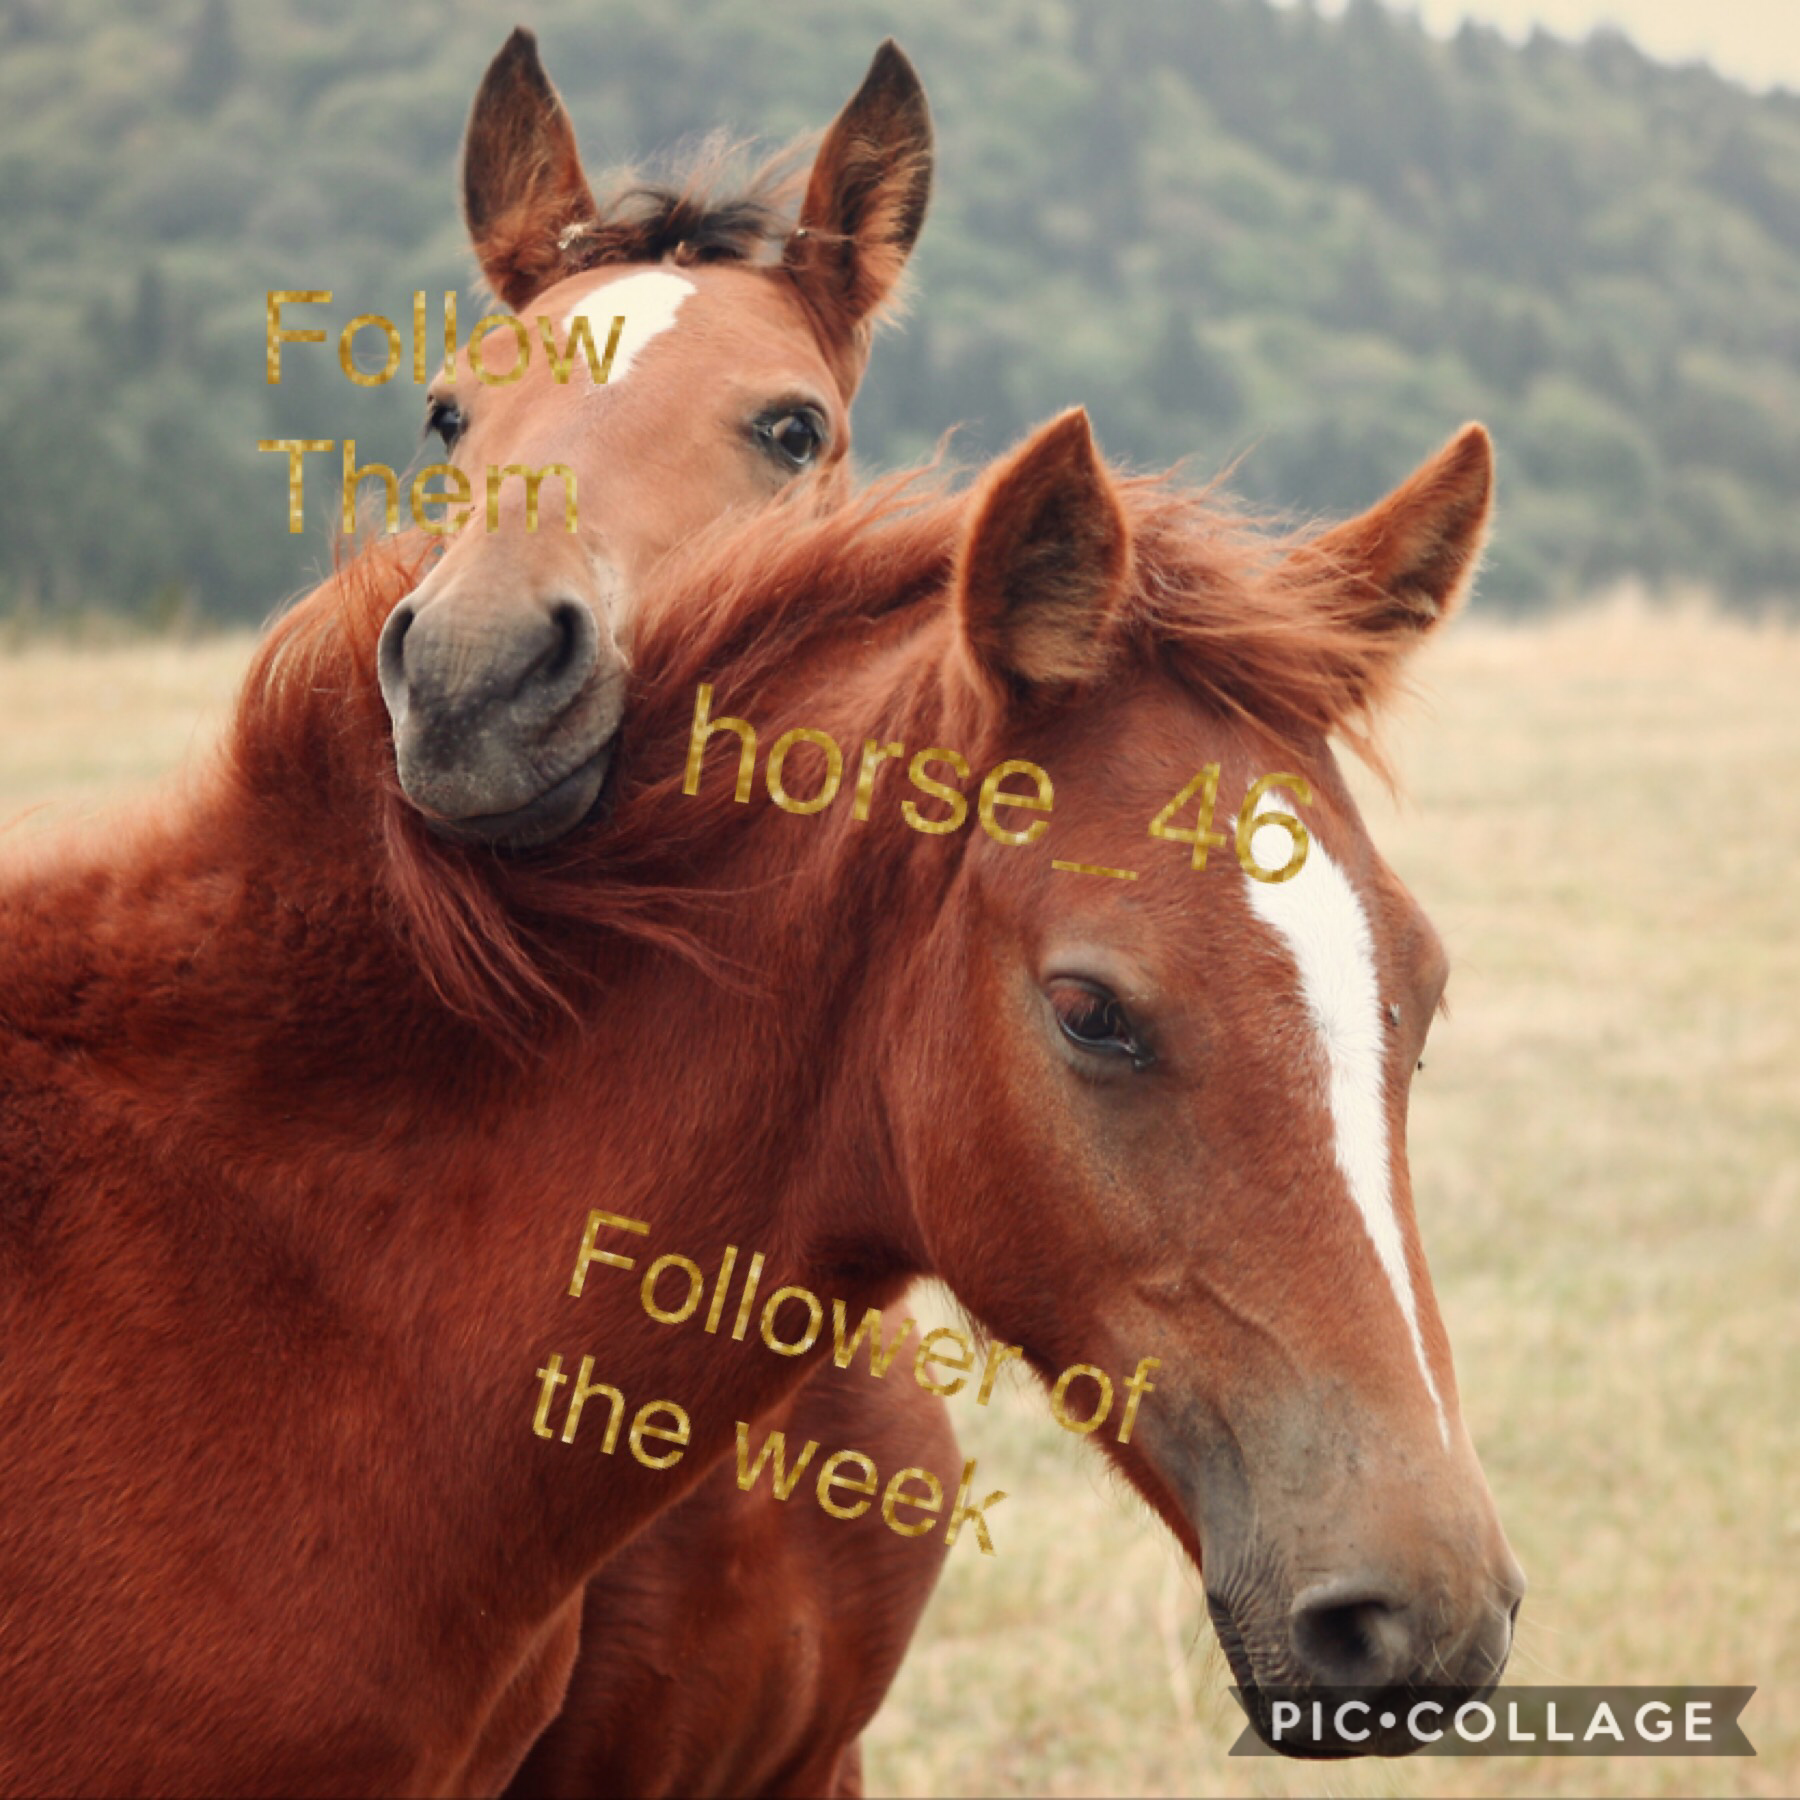 Tap it
Follow horse_46 follower of the week 